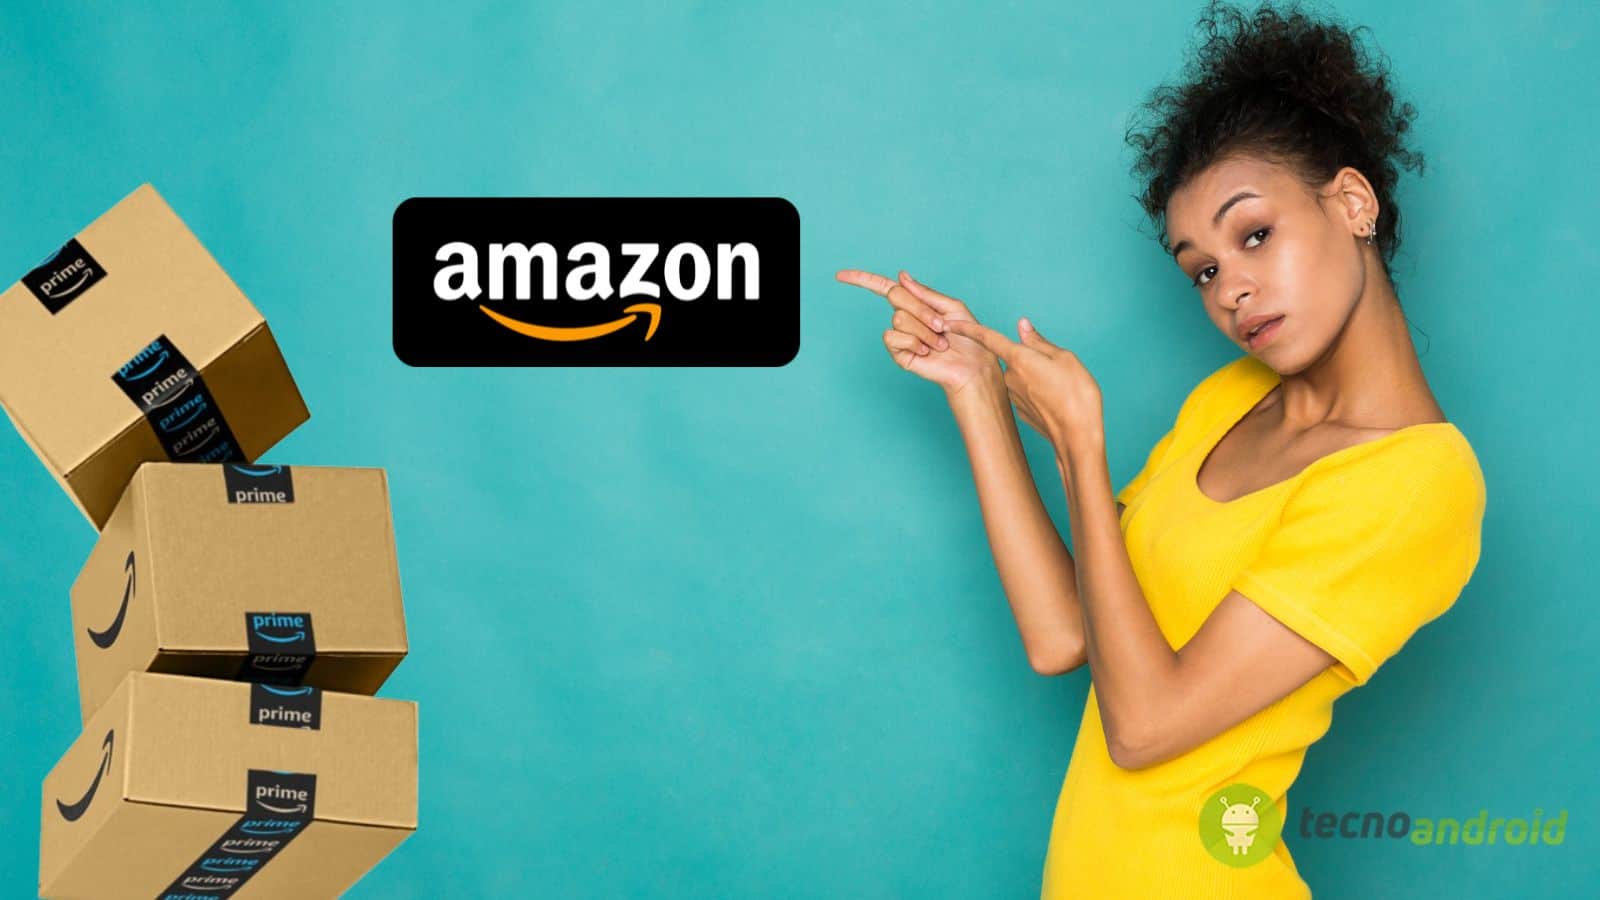 Amazon, offerte di fine mese al 70% di sconto: la lista